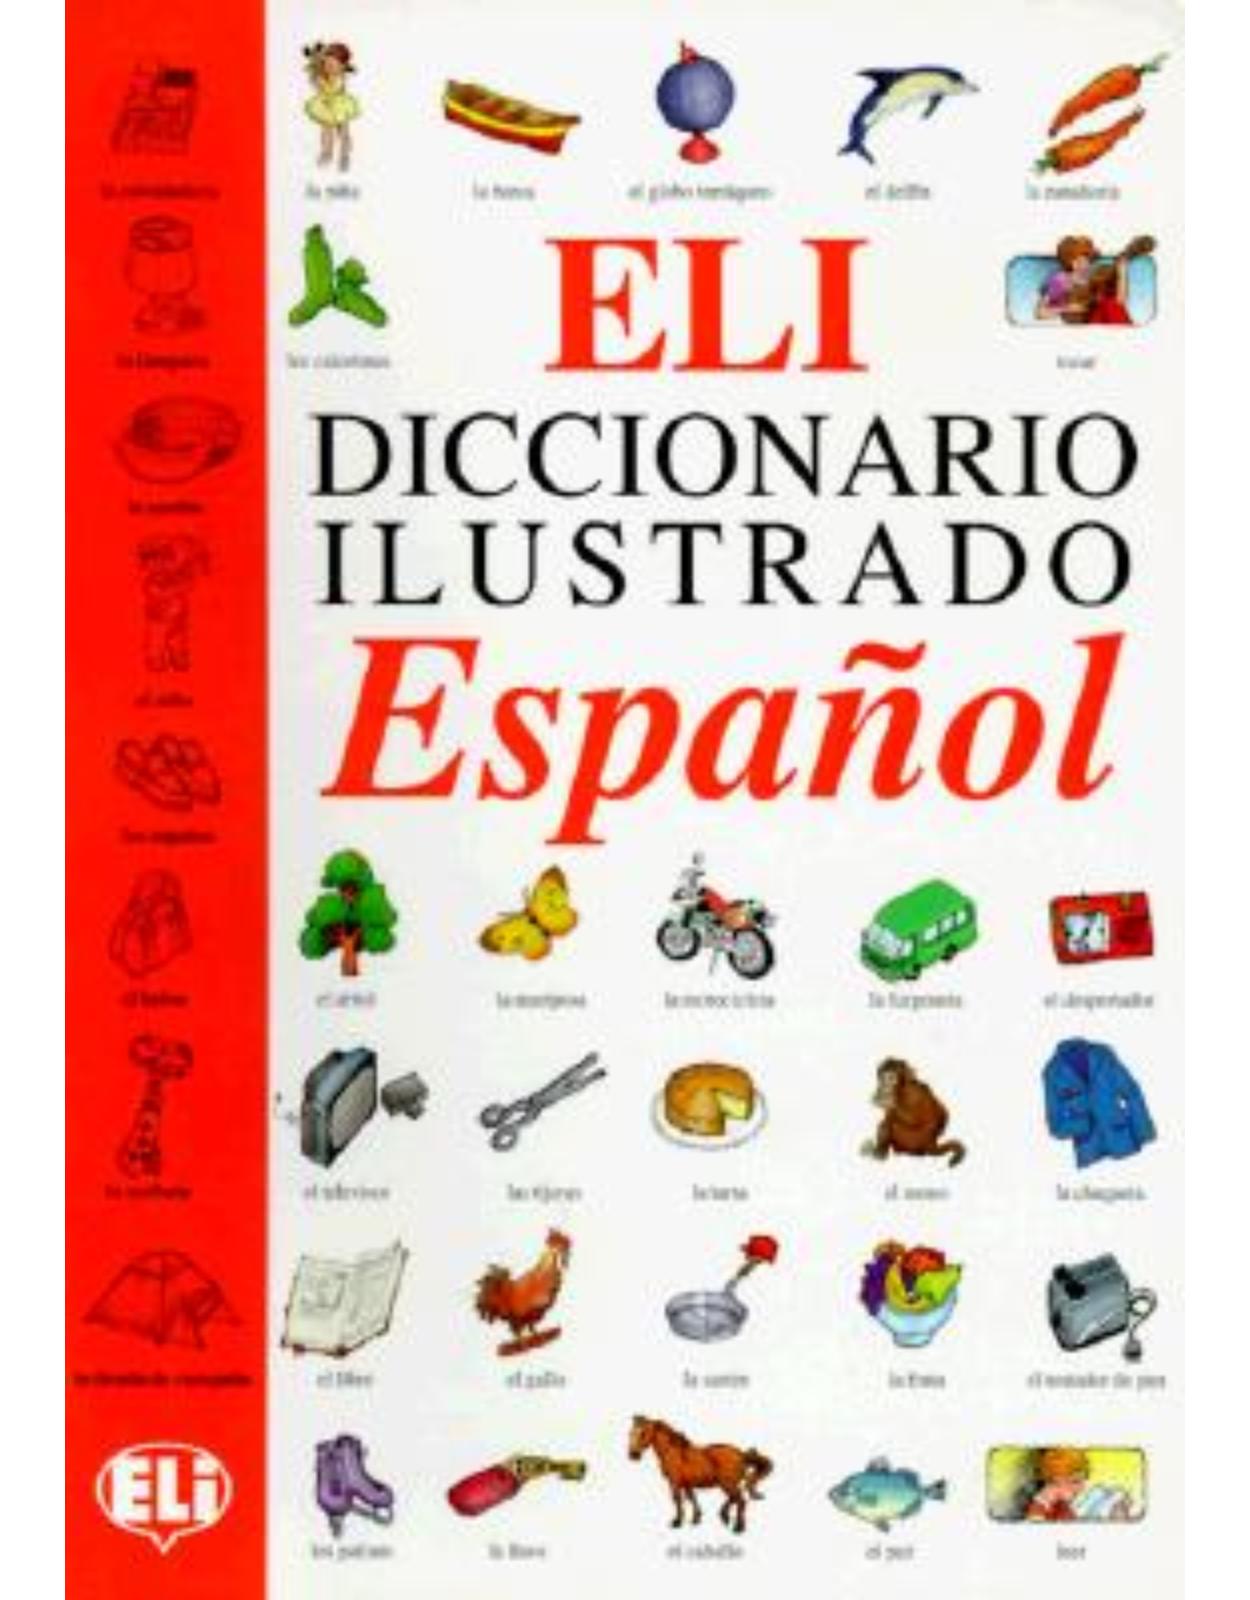 Eli Picture Dictionary: Diccionario Ilustrado Espanol